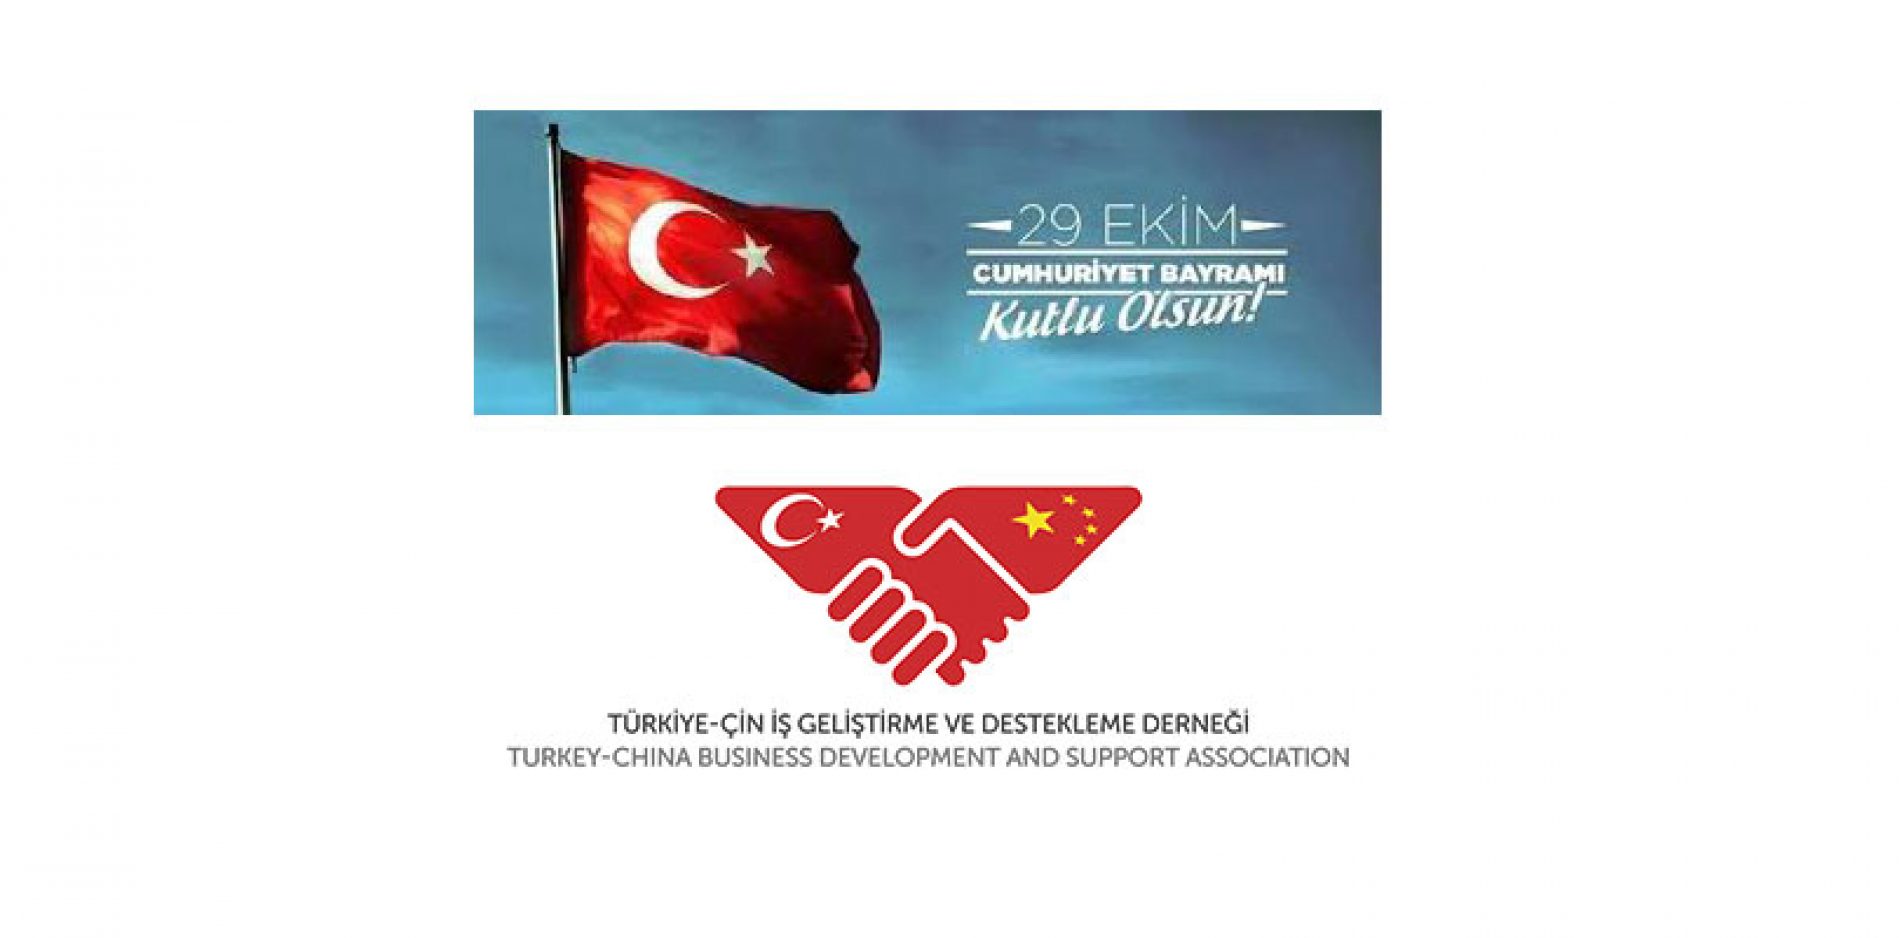 29 EKİM CUMHURİYET BAYRAMI’MIZ KUTLU OLSUN – Türkiye-Çin İş Geliştirme ve Destekleme Derneği Yönetim Kurulu